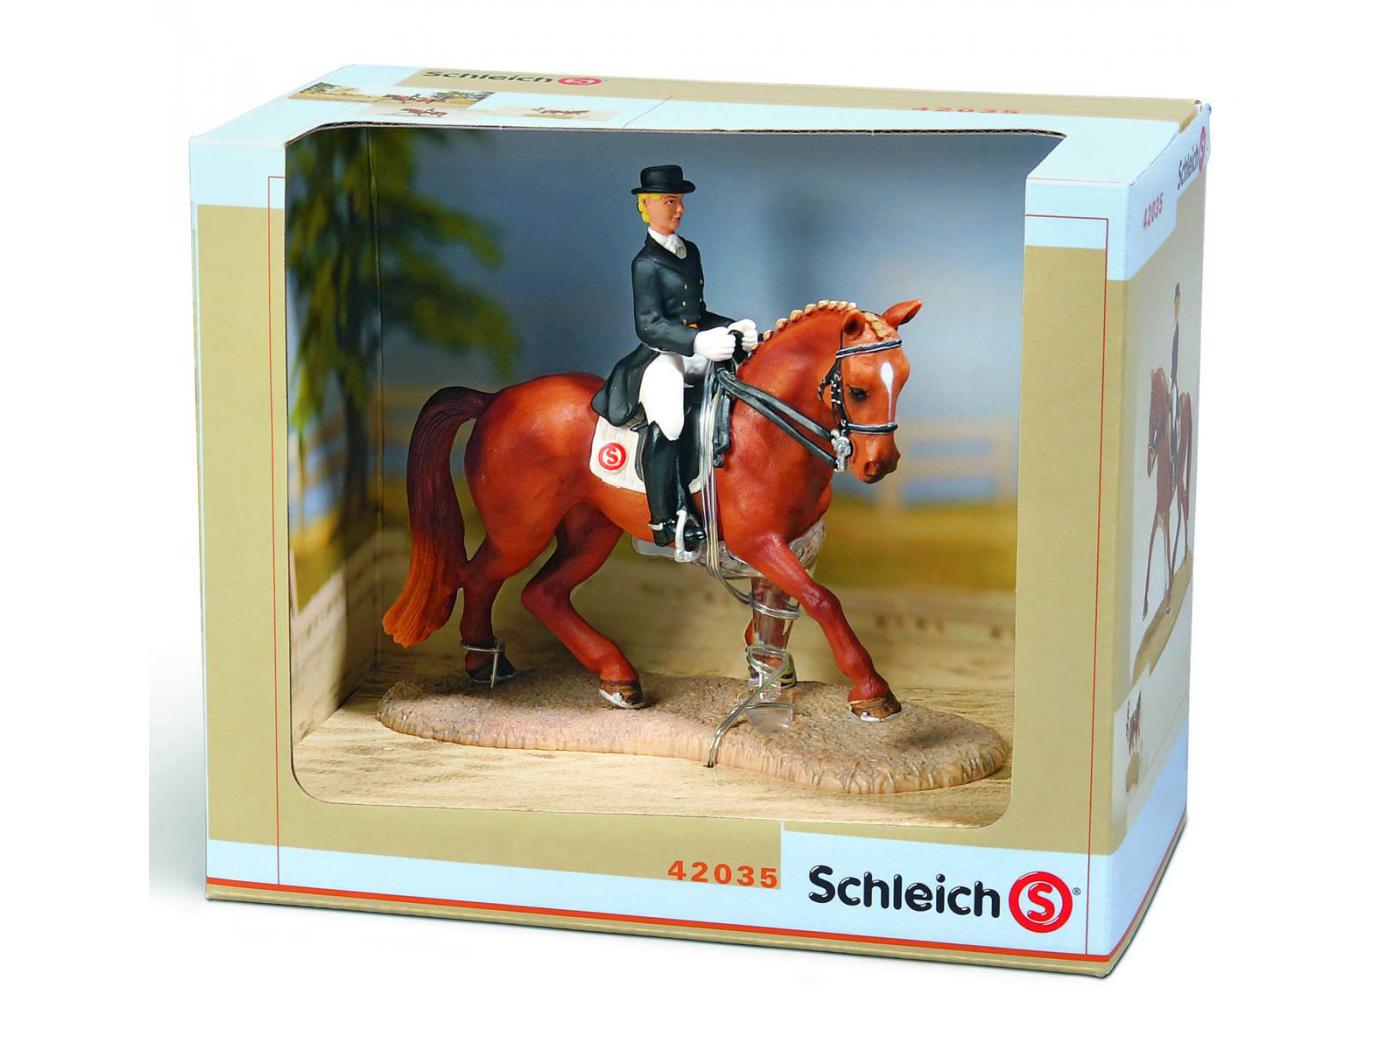 Schleich - Set équitation, dressage 20 cm X 11.5 cm X 17.5 cm